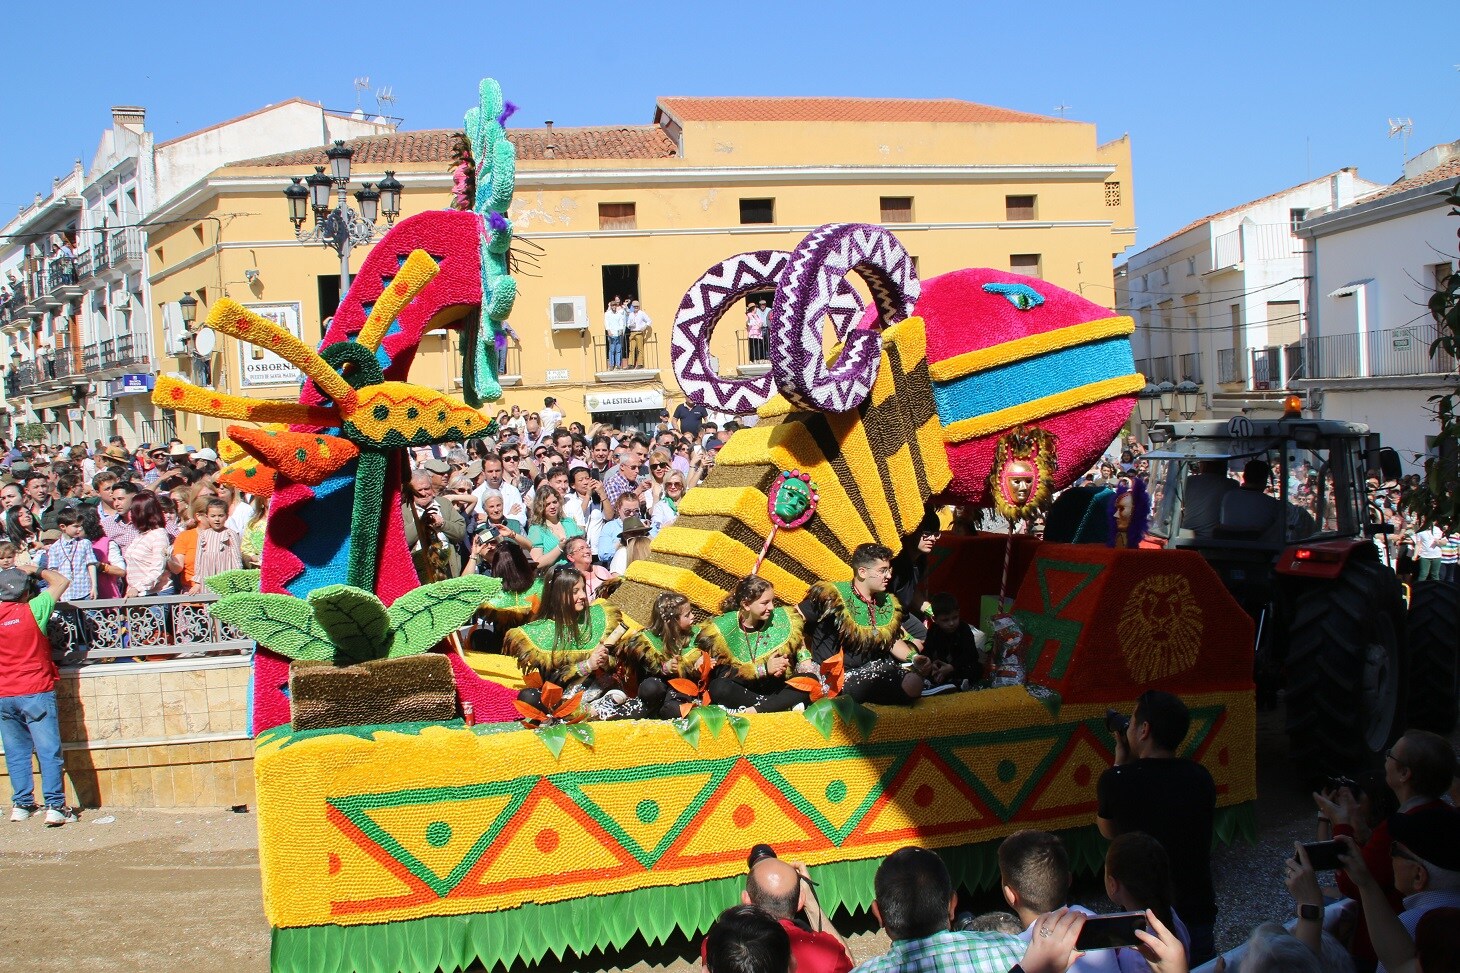 Imagen principal - Carroza 'El rey de la selva' (arriba), carroza 'Atelier de costura' (izquierda) y niños con el traje típico (derecha). 